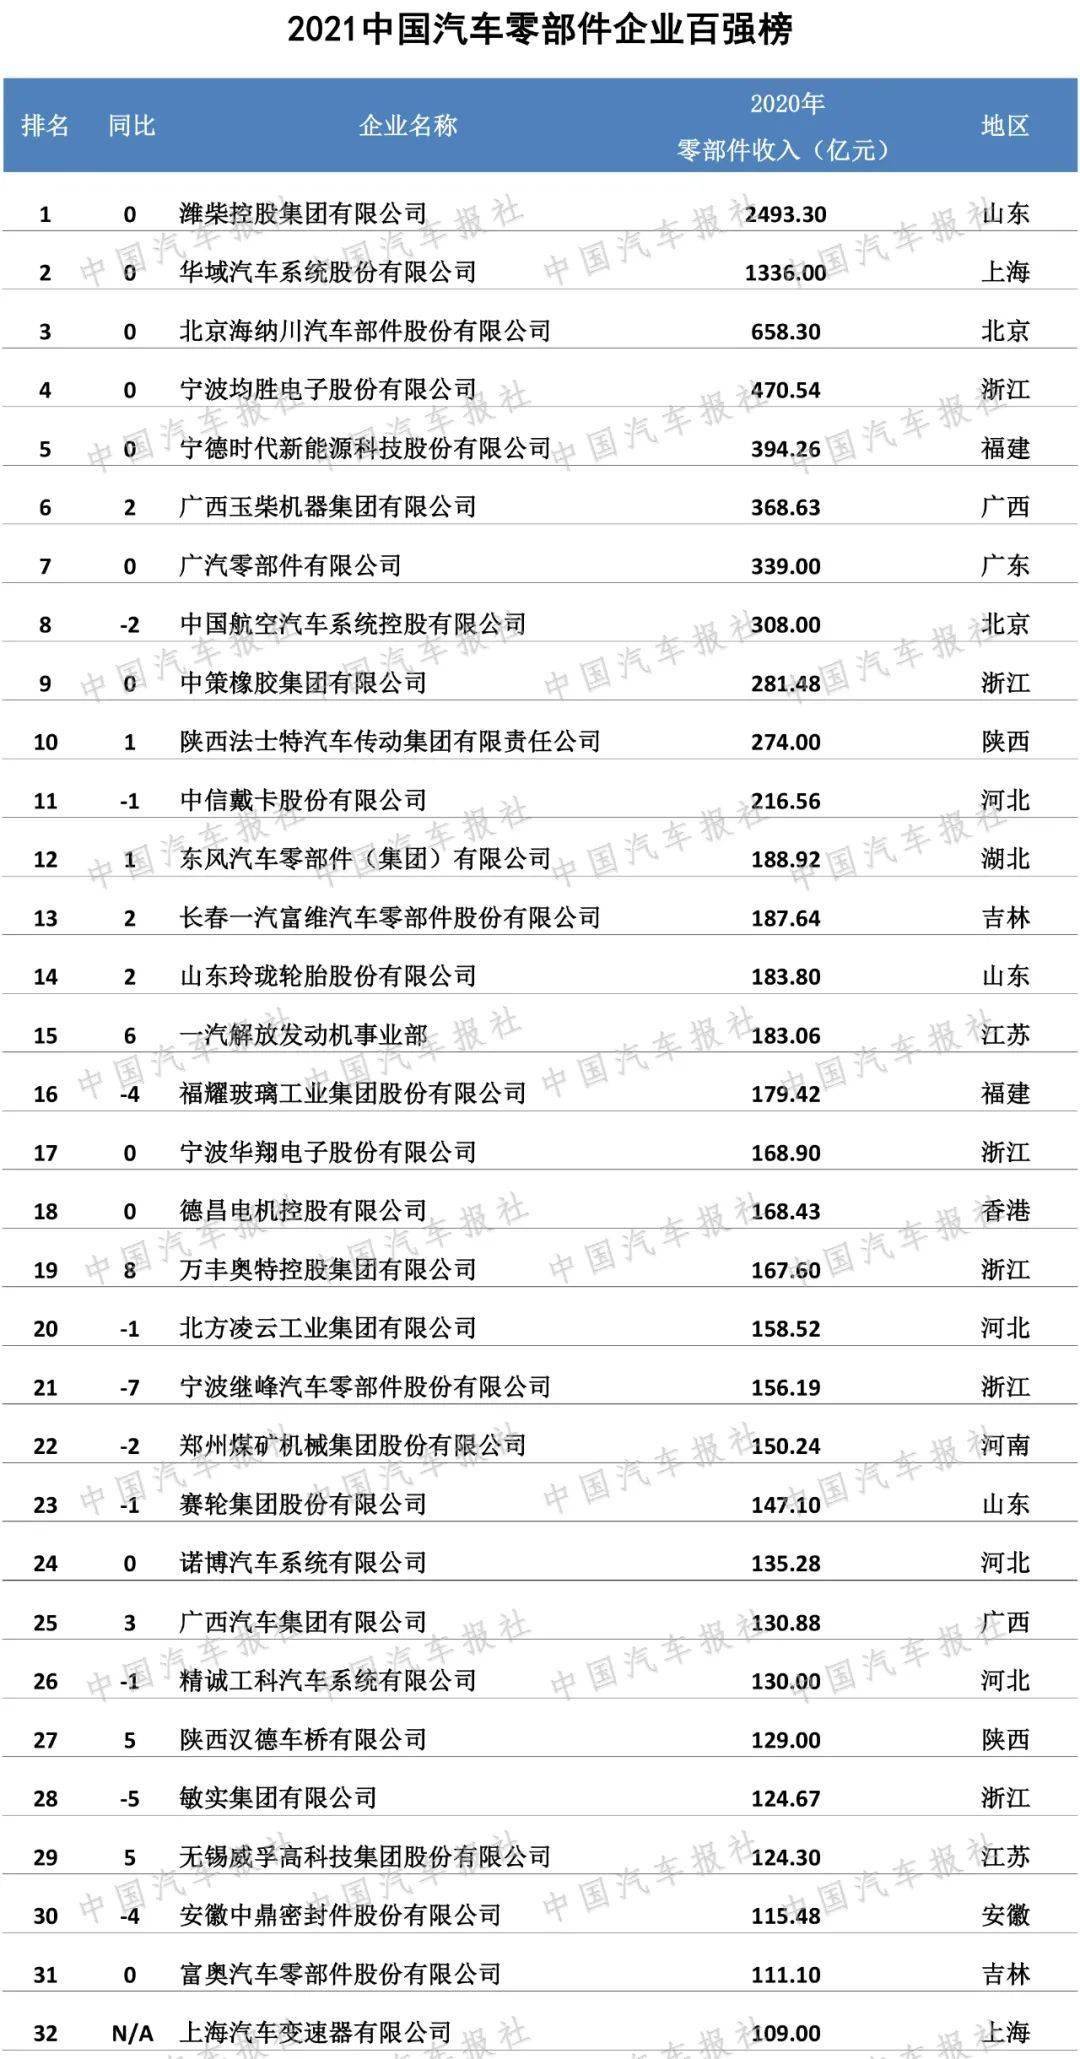 中国汽车公司排行_青特集团获中国汽车零部件企业百强称号排名居第41位